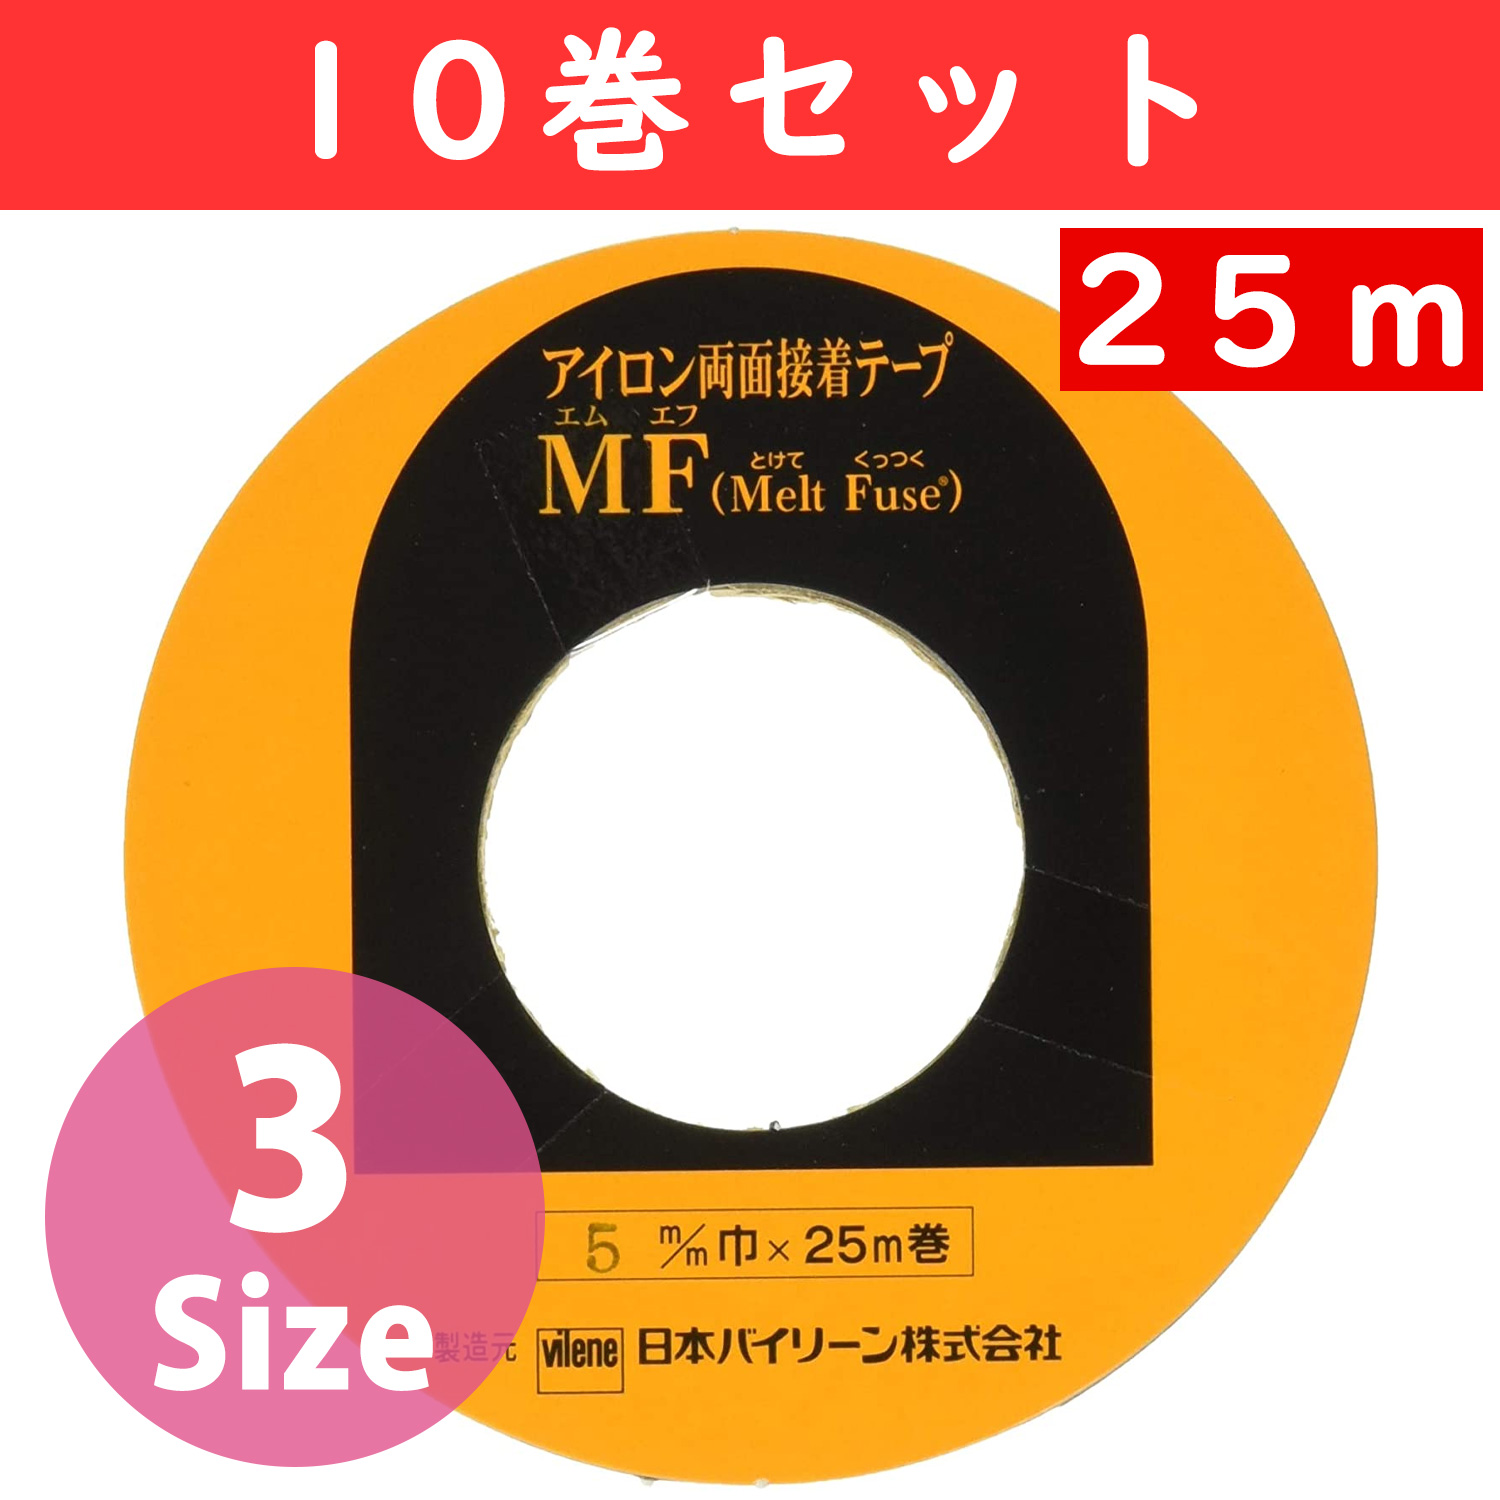 FMF MFテープ両面アイロン接着 25m 10巻セット (セット)